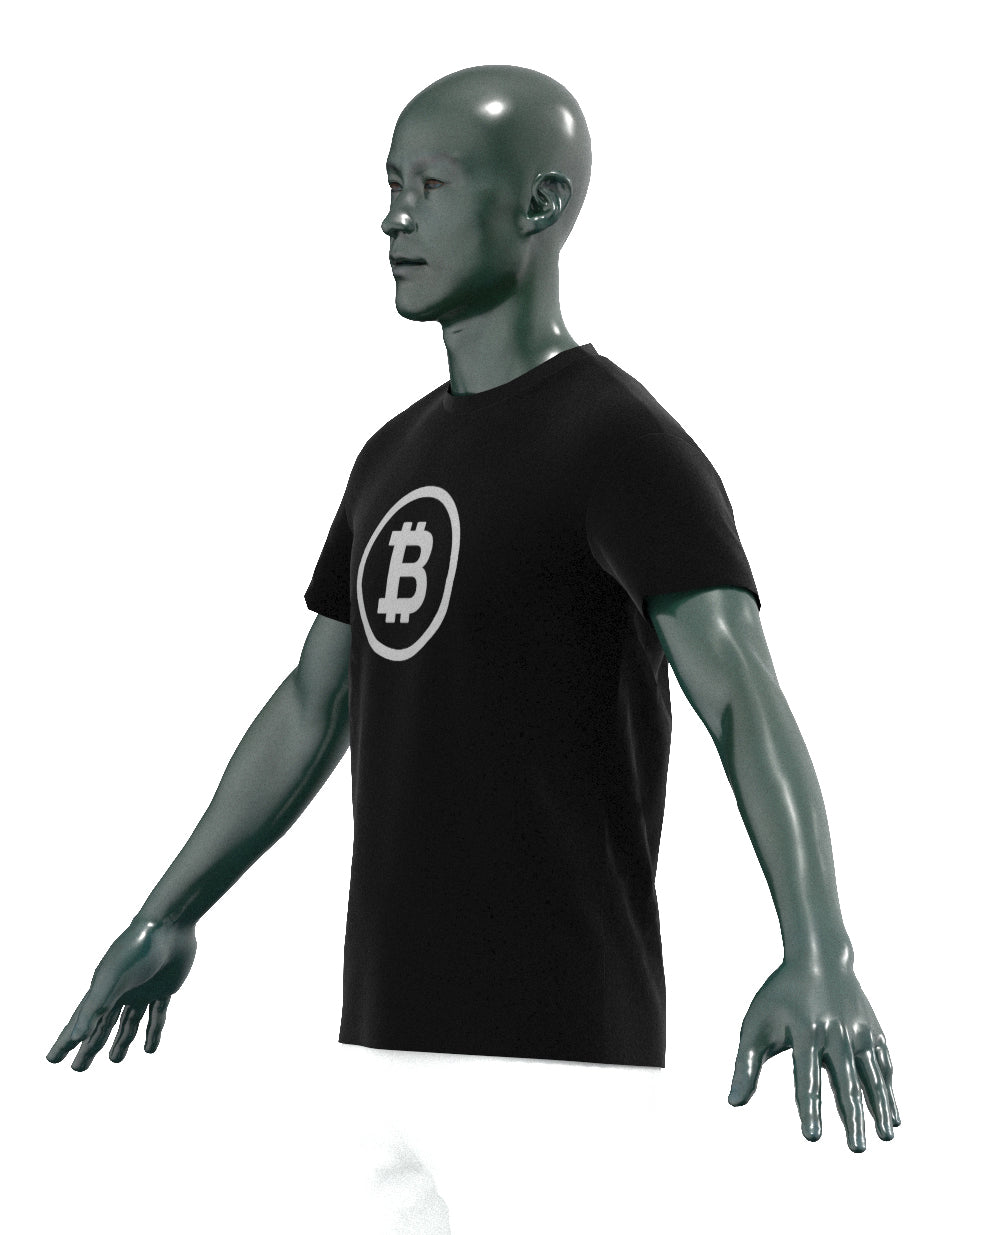 Reflective Bitcoin Shirt